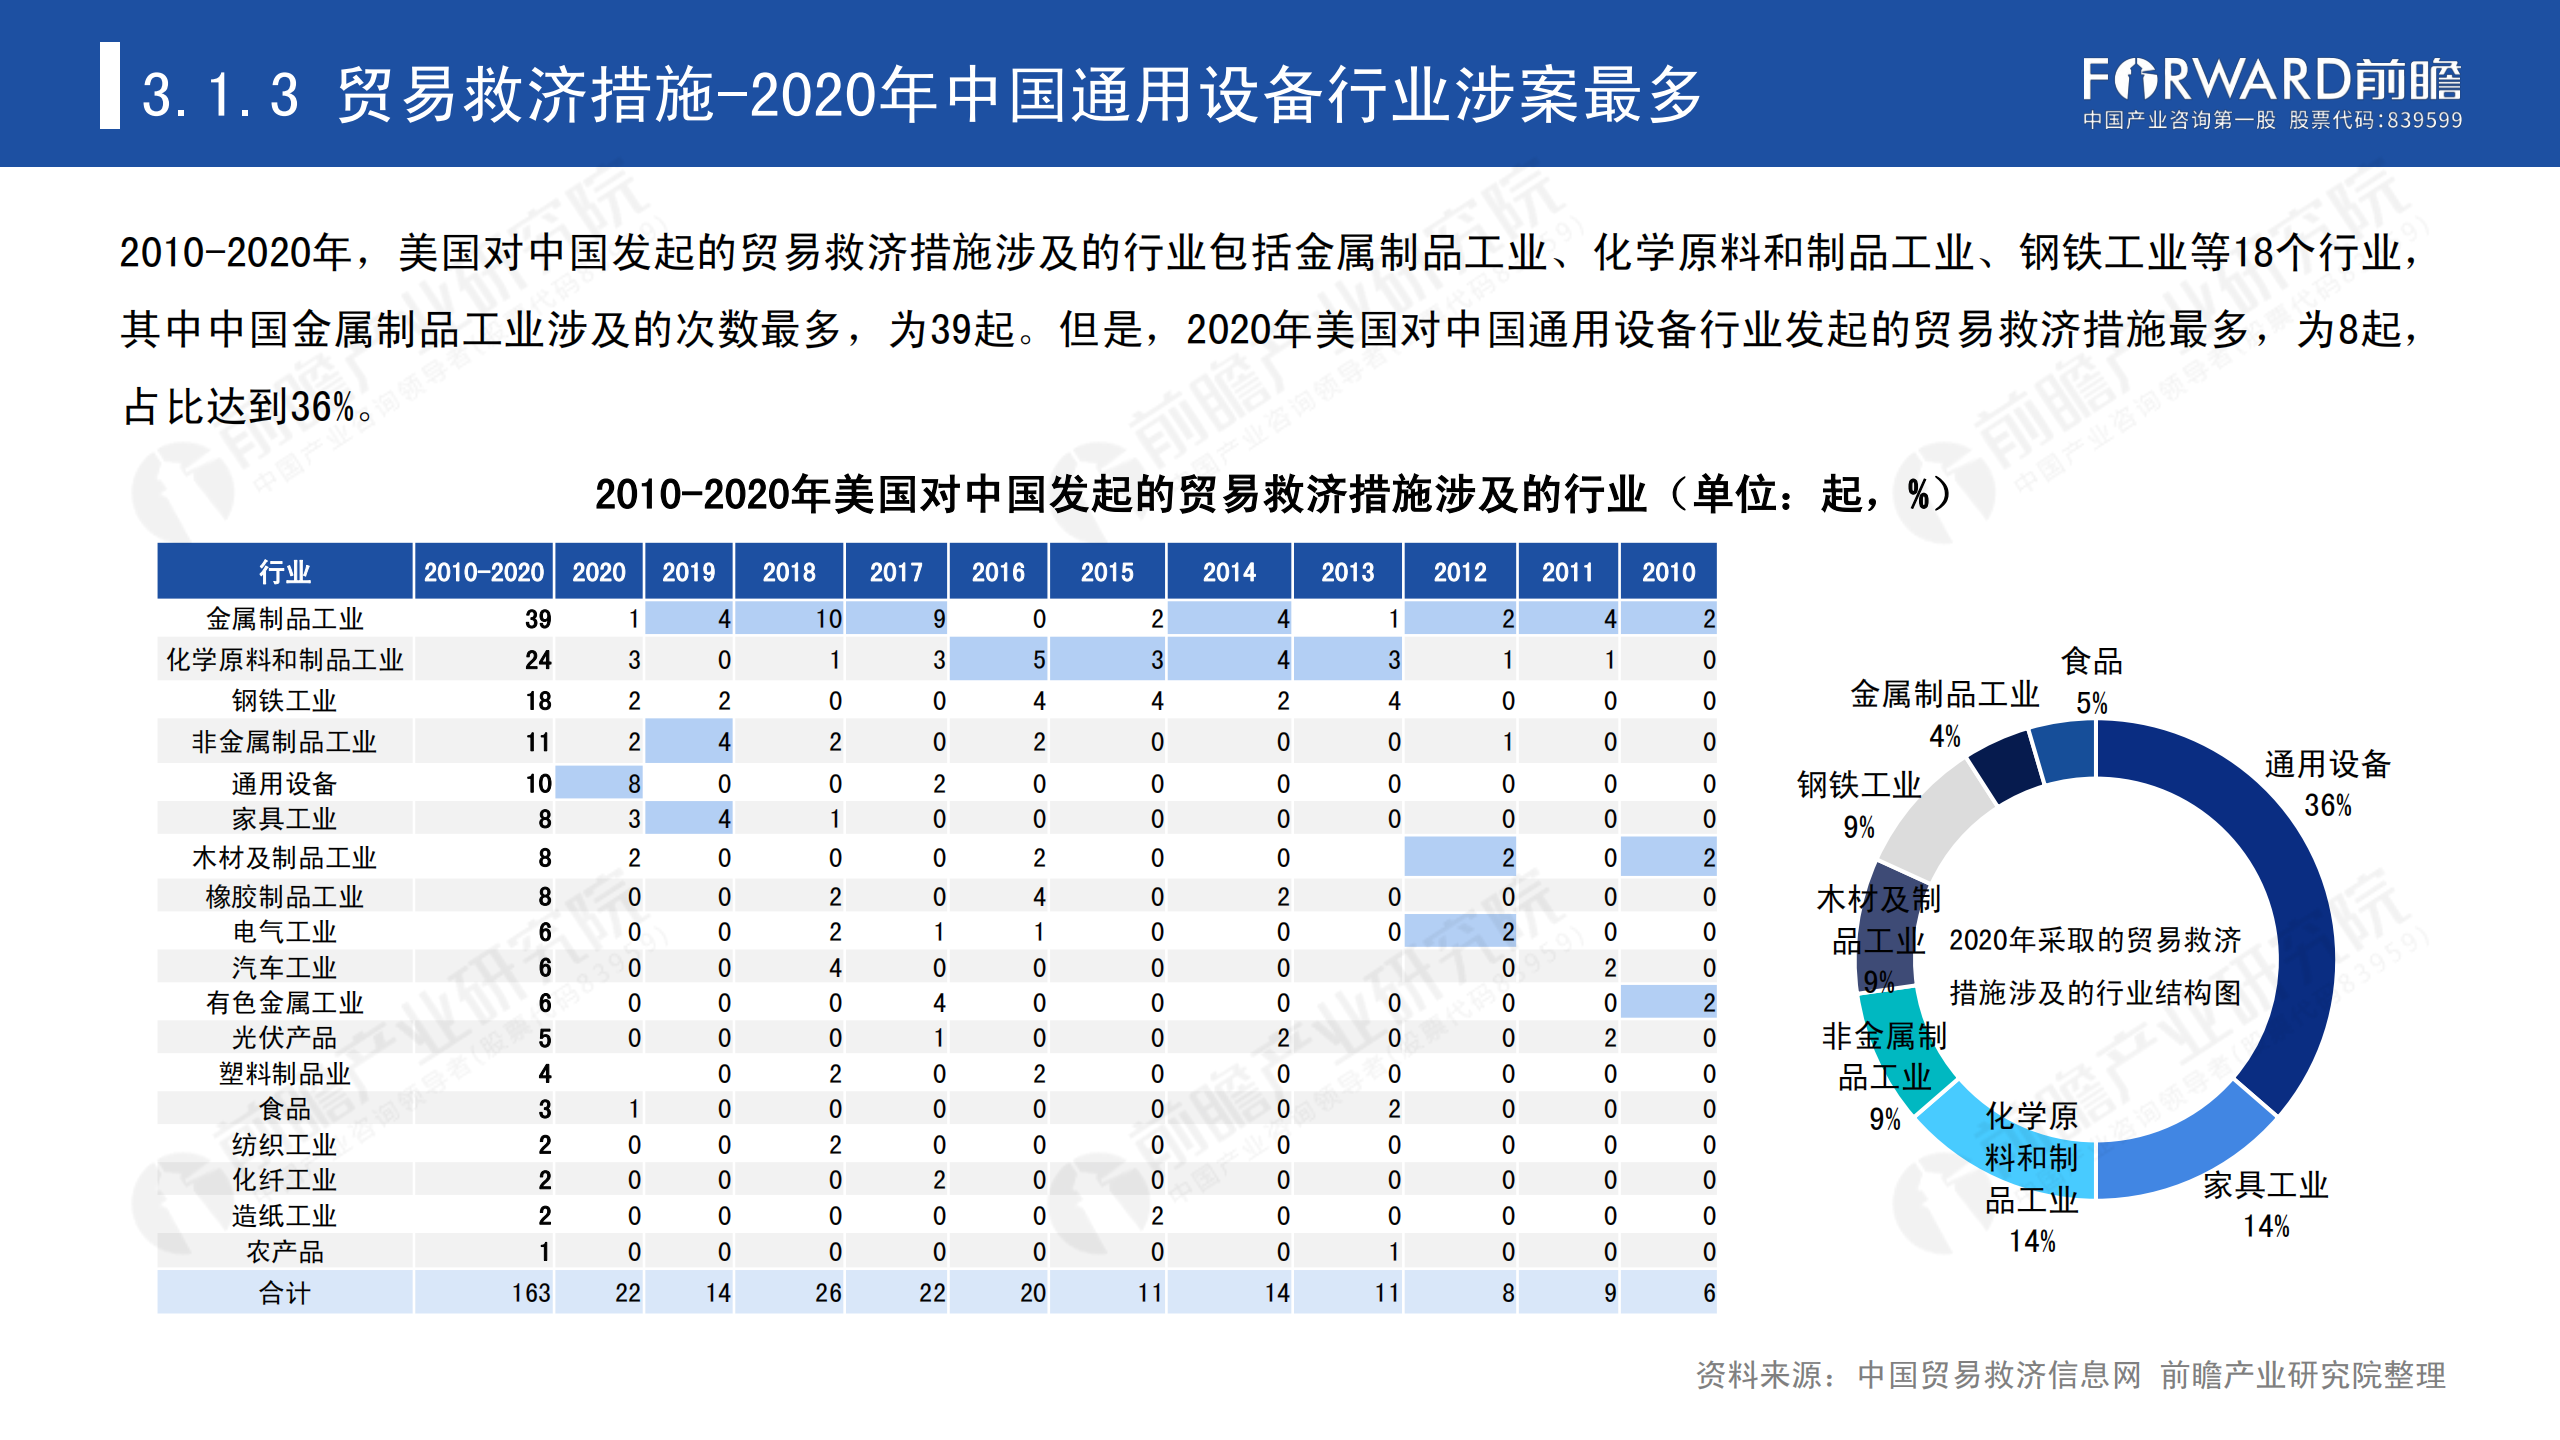 2020年中国贸易摩擦全景回顾-前瞻-2021-64页_26.png